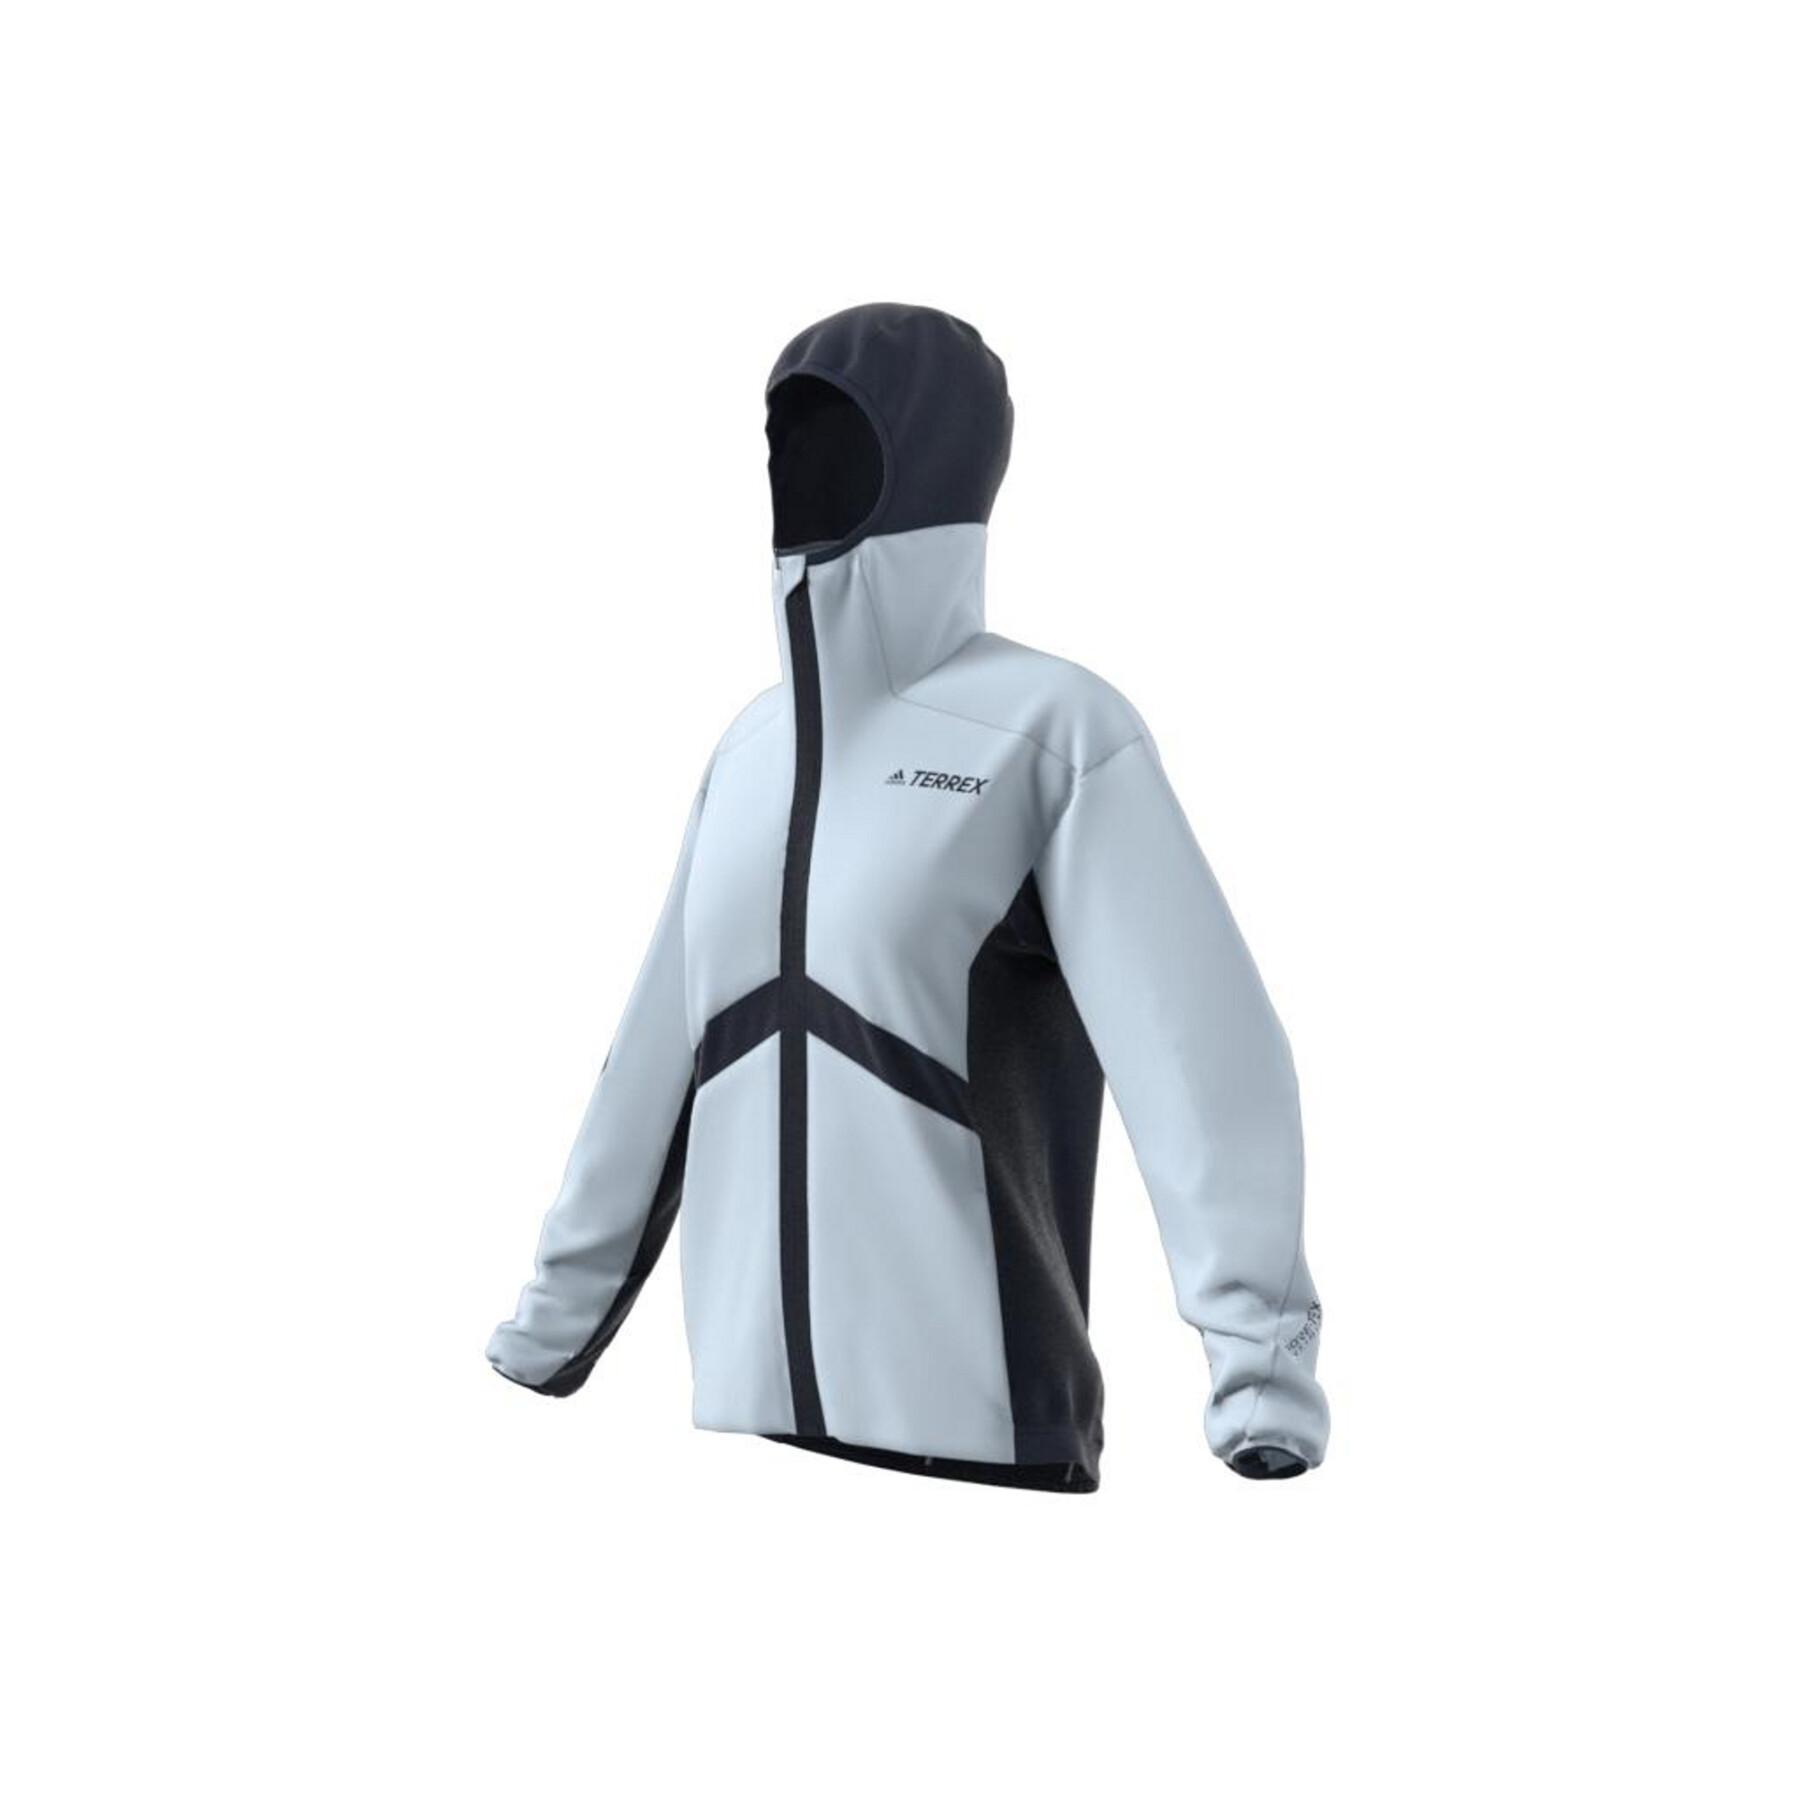 Women's jacket adidas Terrex Skyclimb Gore Hybrid Insulation Ski Touring